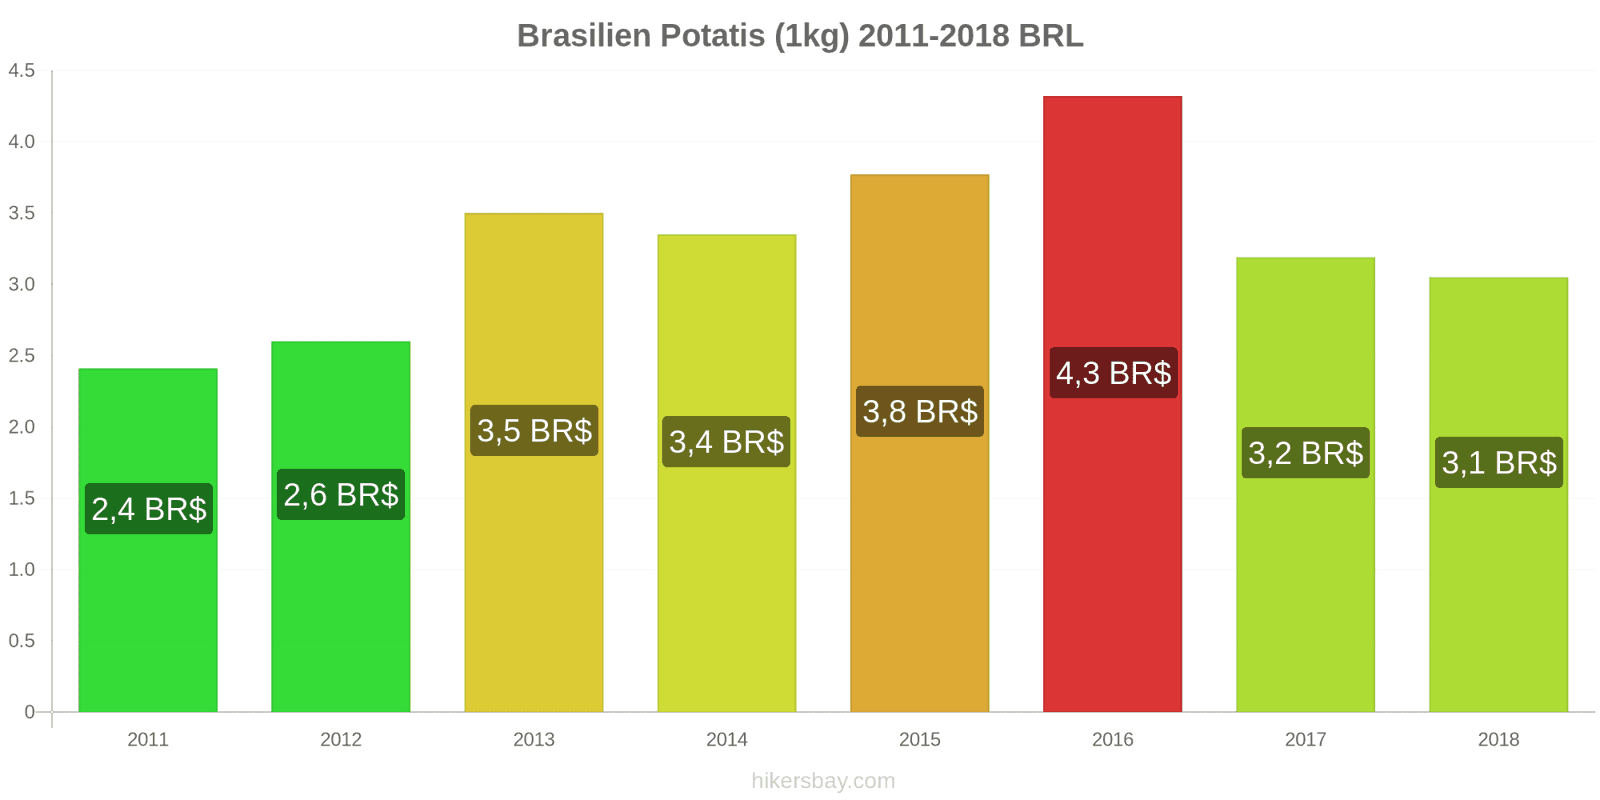 Brasilien prisändringar Potatis (1kg) hikersbay.com